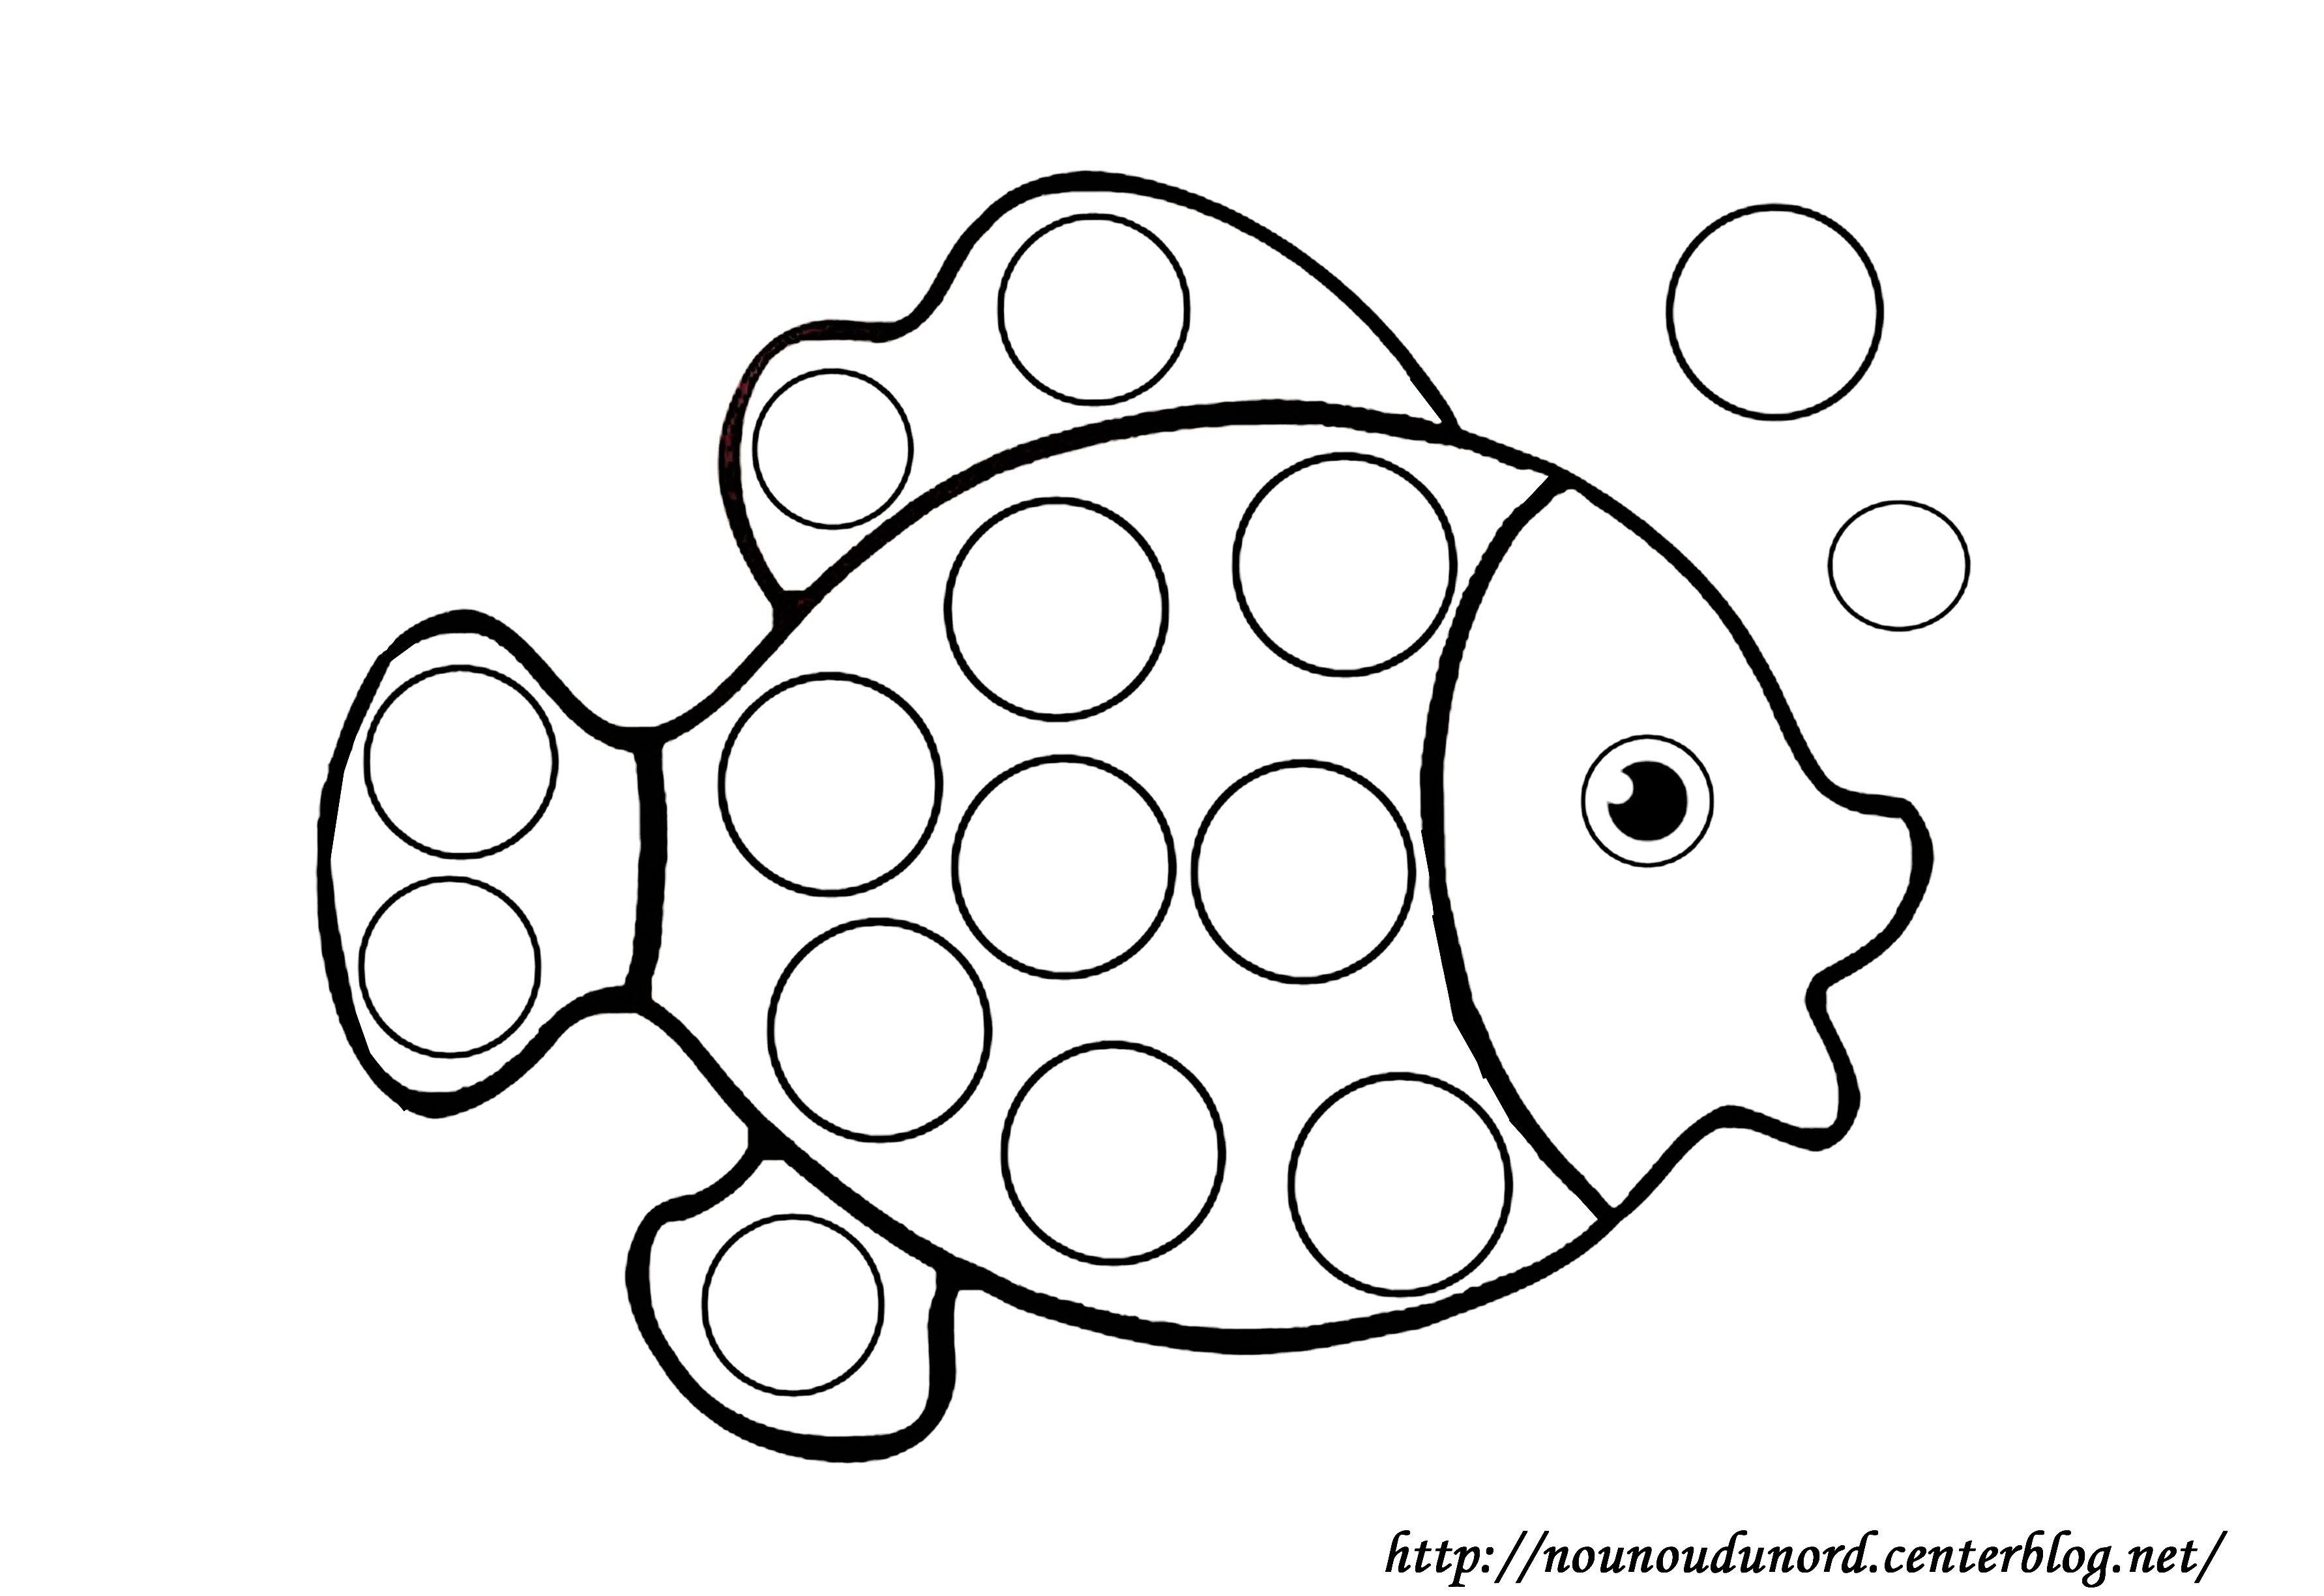 Dessin dessin de poisson d avril gratuit